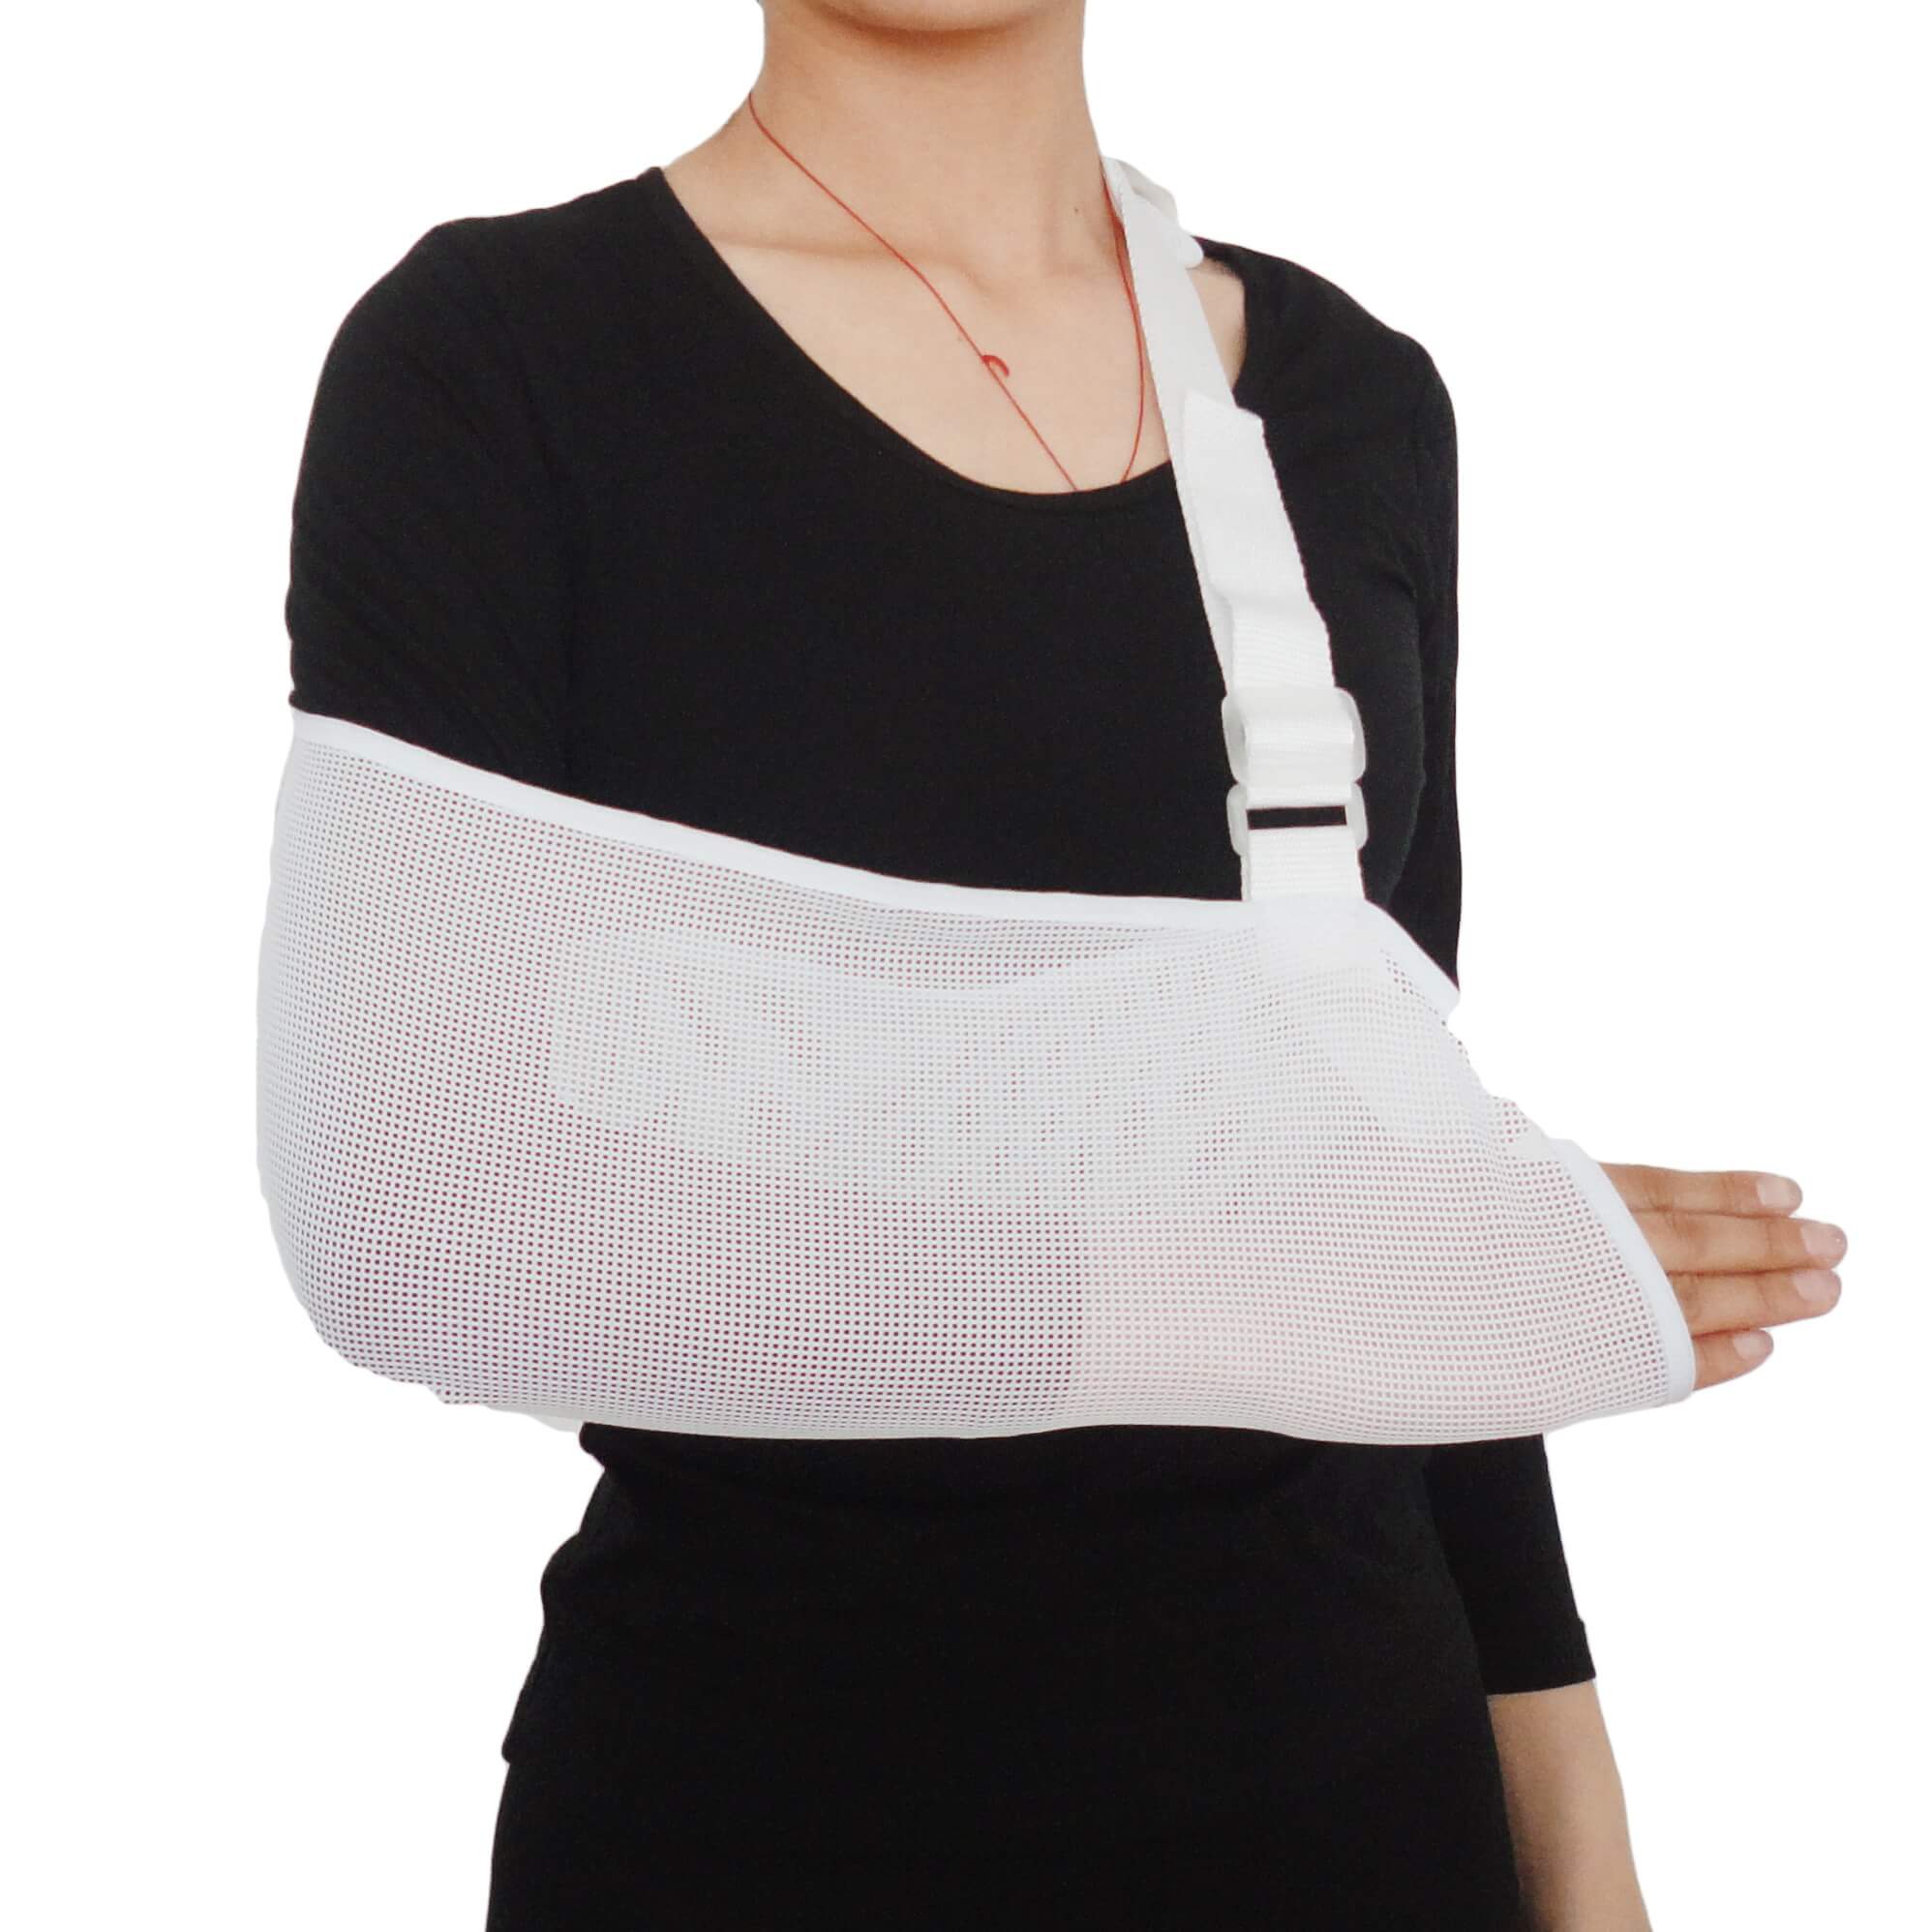 Single layer mesh arm sling shoulder support